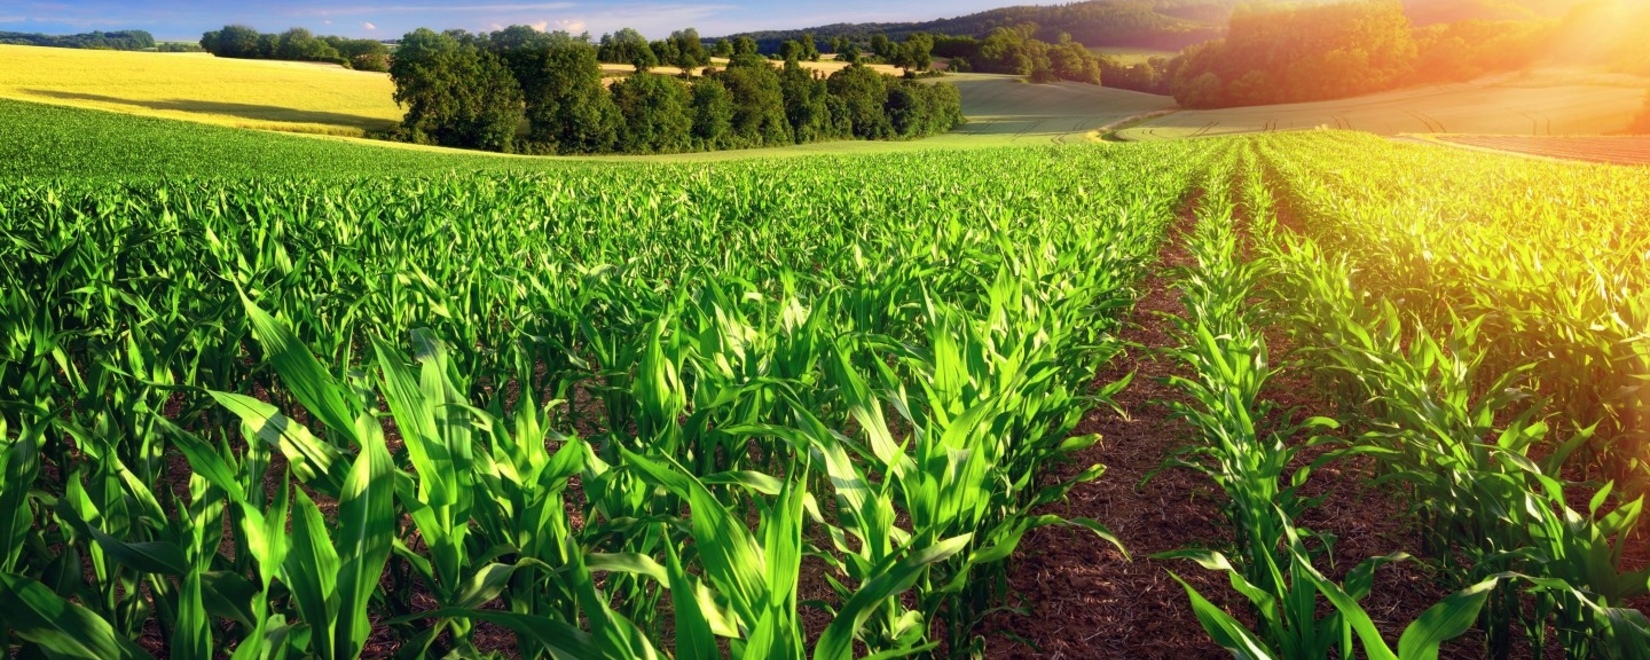 Рост фьючерсов пшеницы на международных биржах и забастовки фермеров во Франции